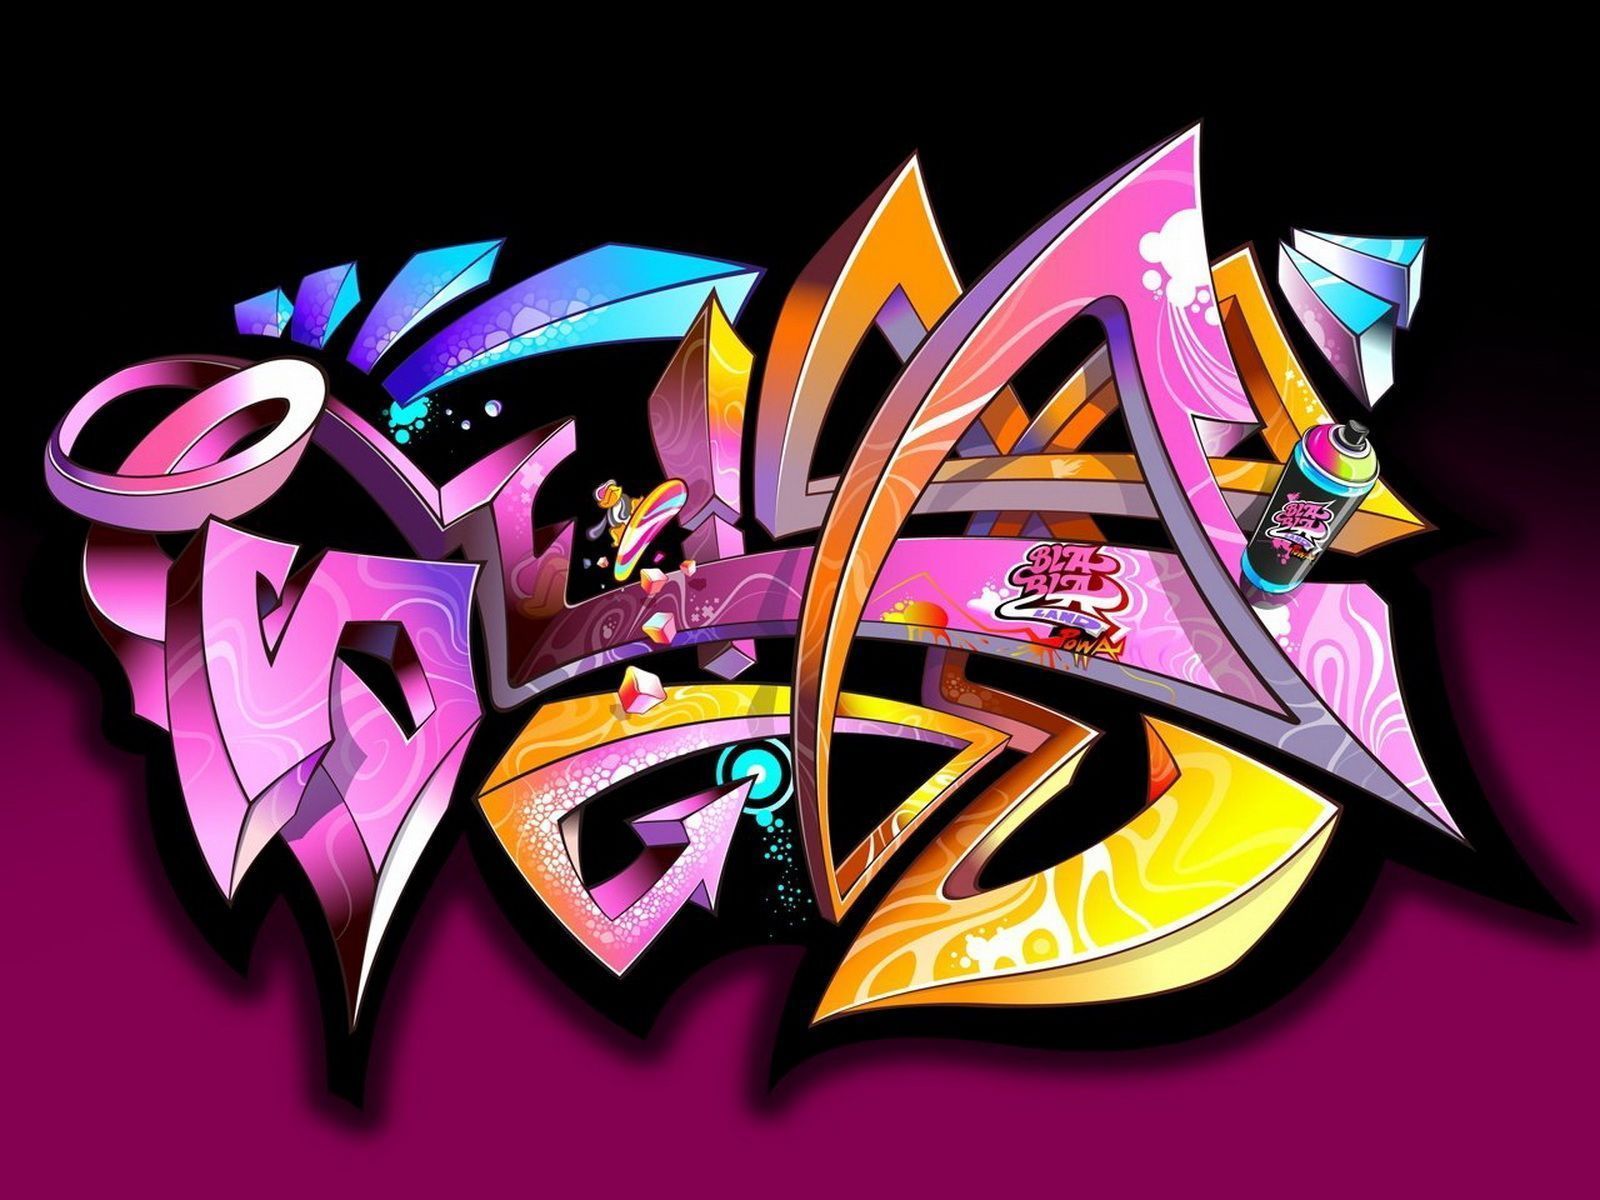 Graffiti #124514 | Full HD Widescreen wallpapers for desktop download